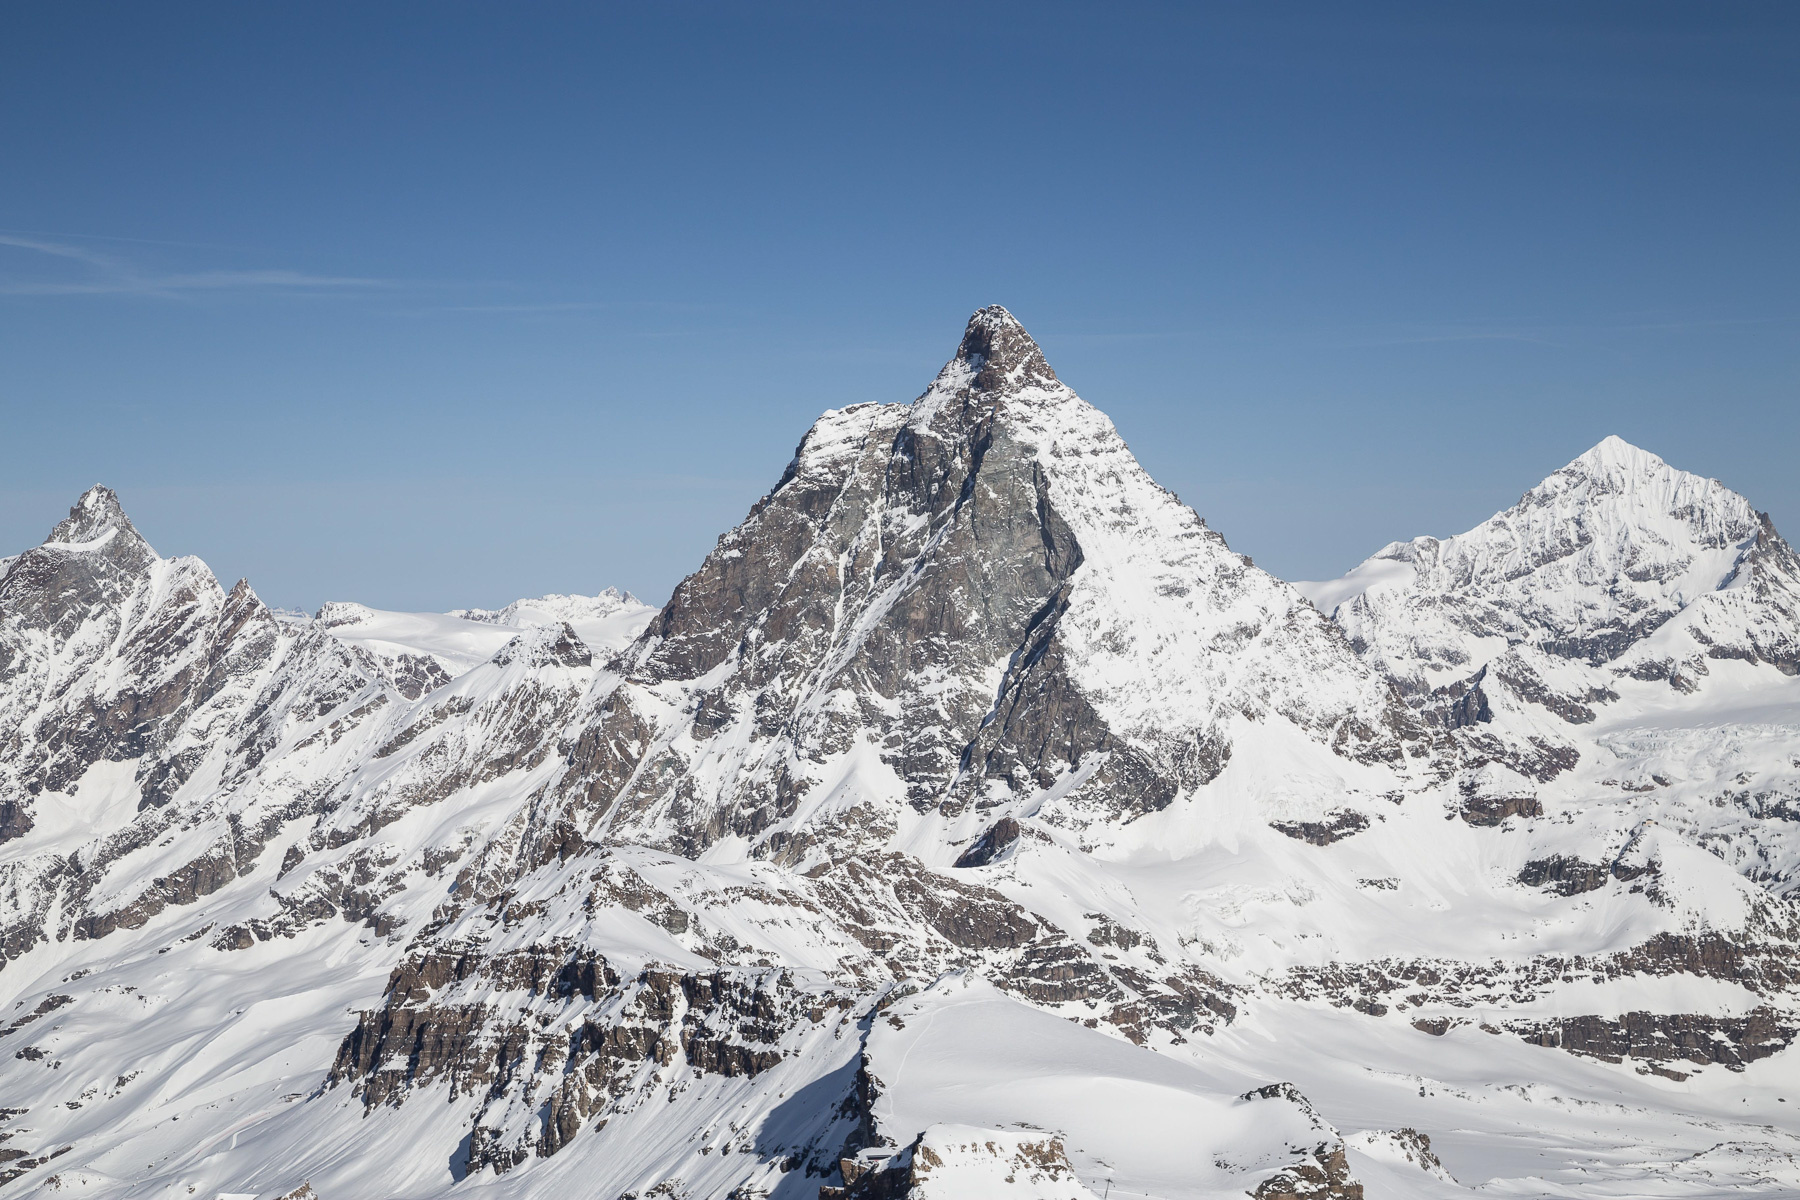 vom Chli Matterhorn aus gesehen.